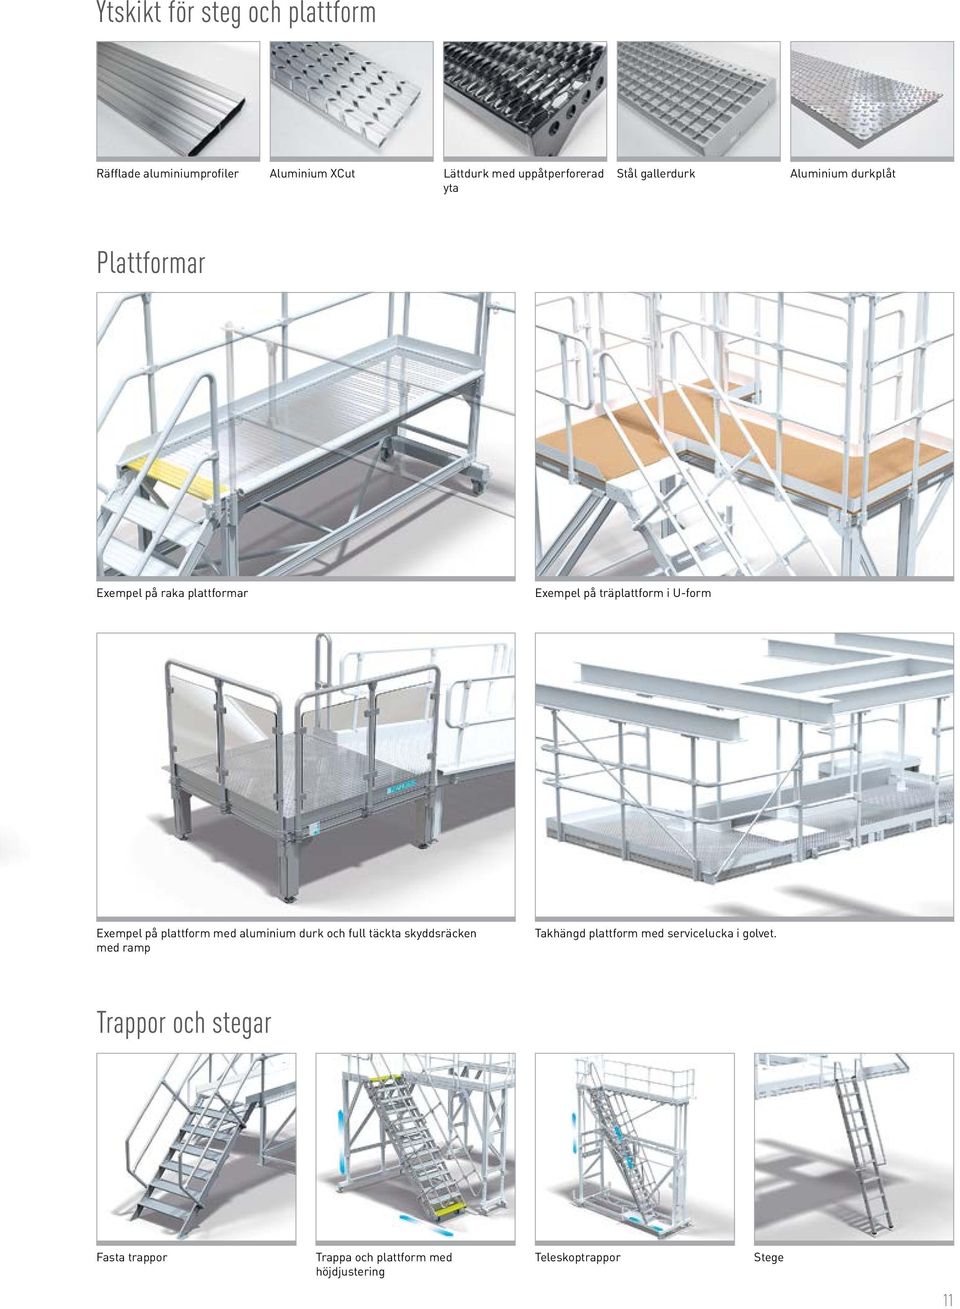 Exempel på plattform med aluminium durk och full täckta skyddsräcken med ramp Takhängd plattform med